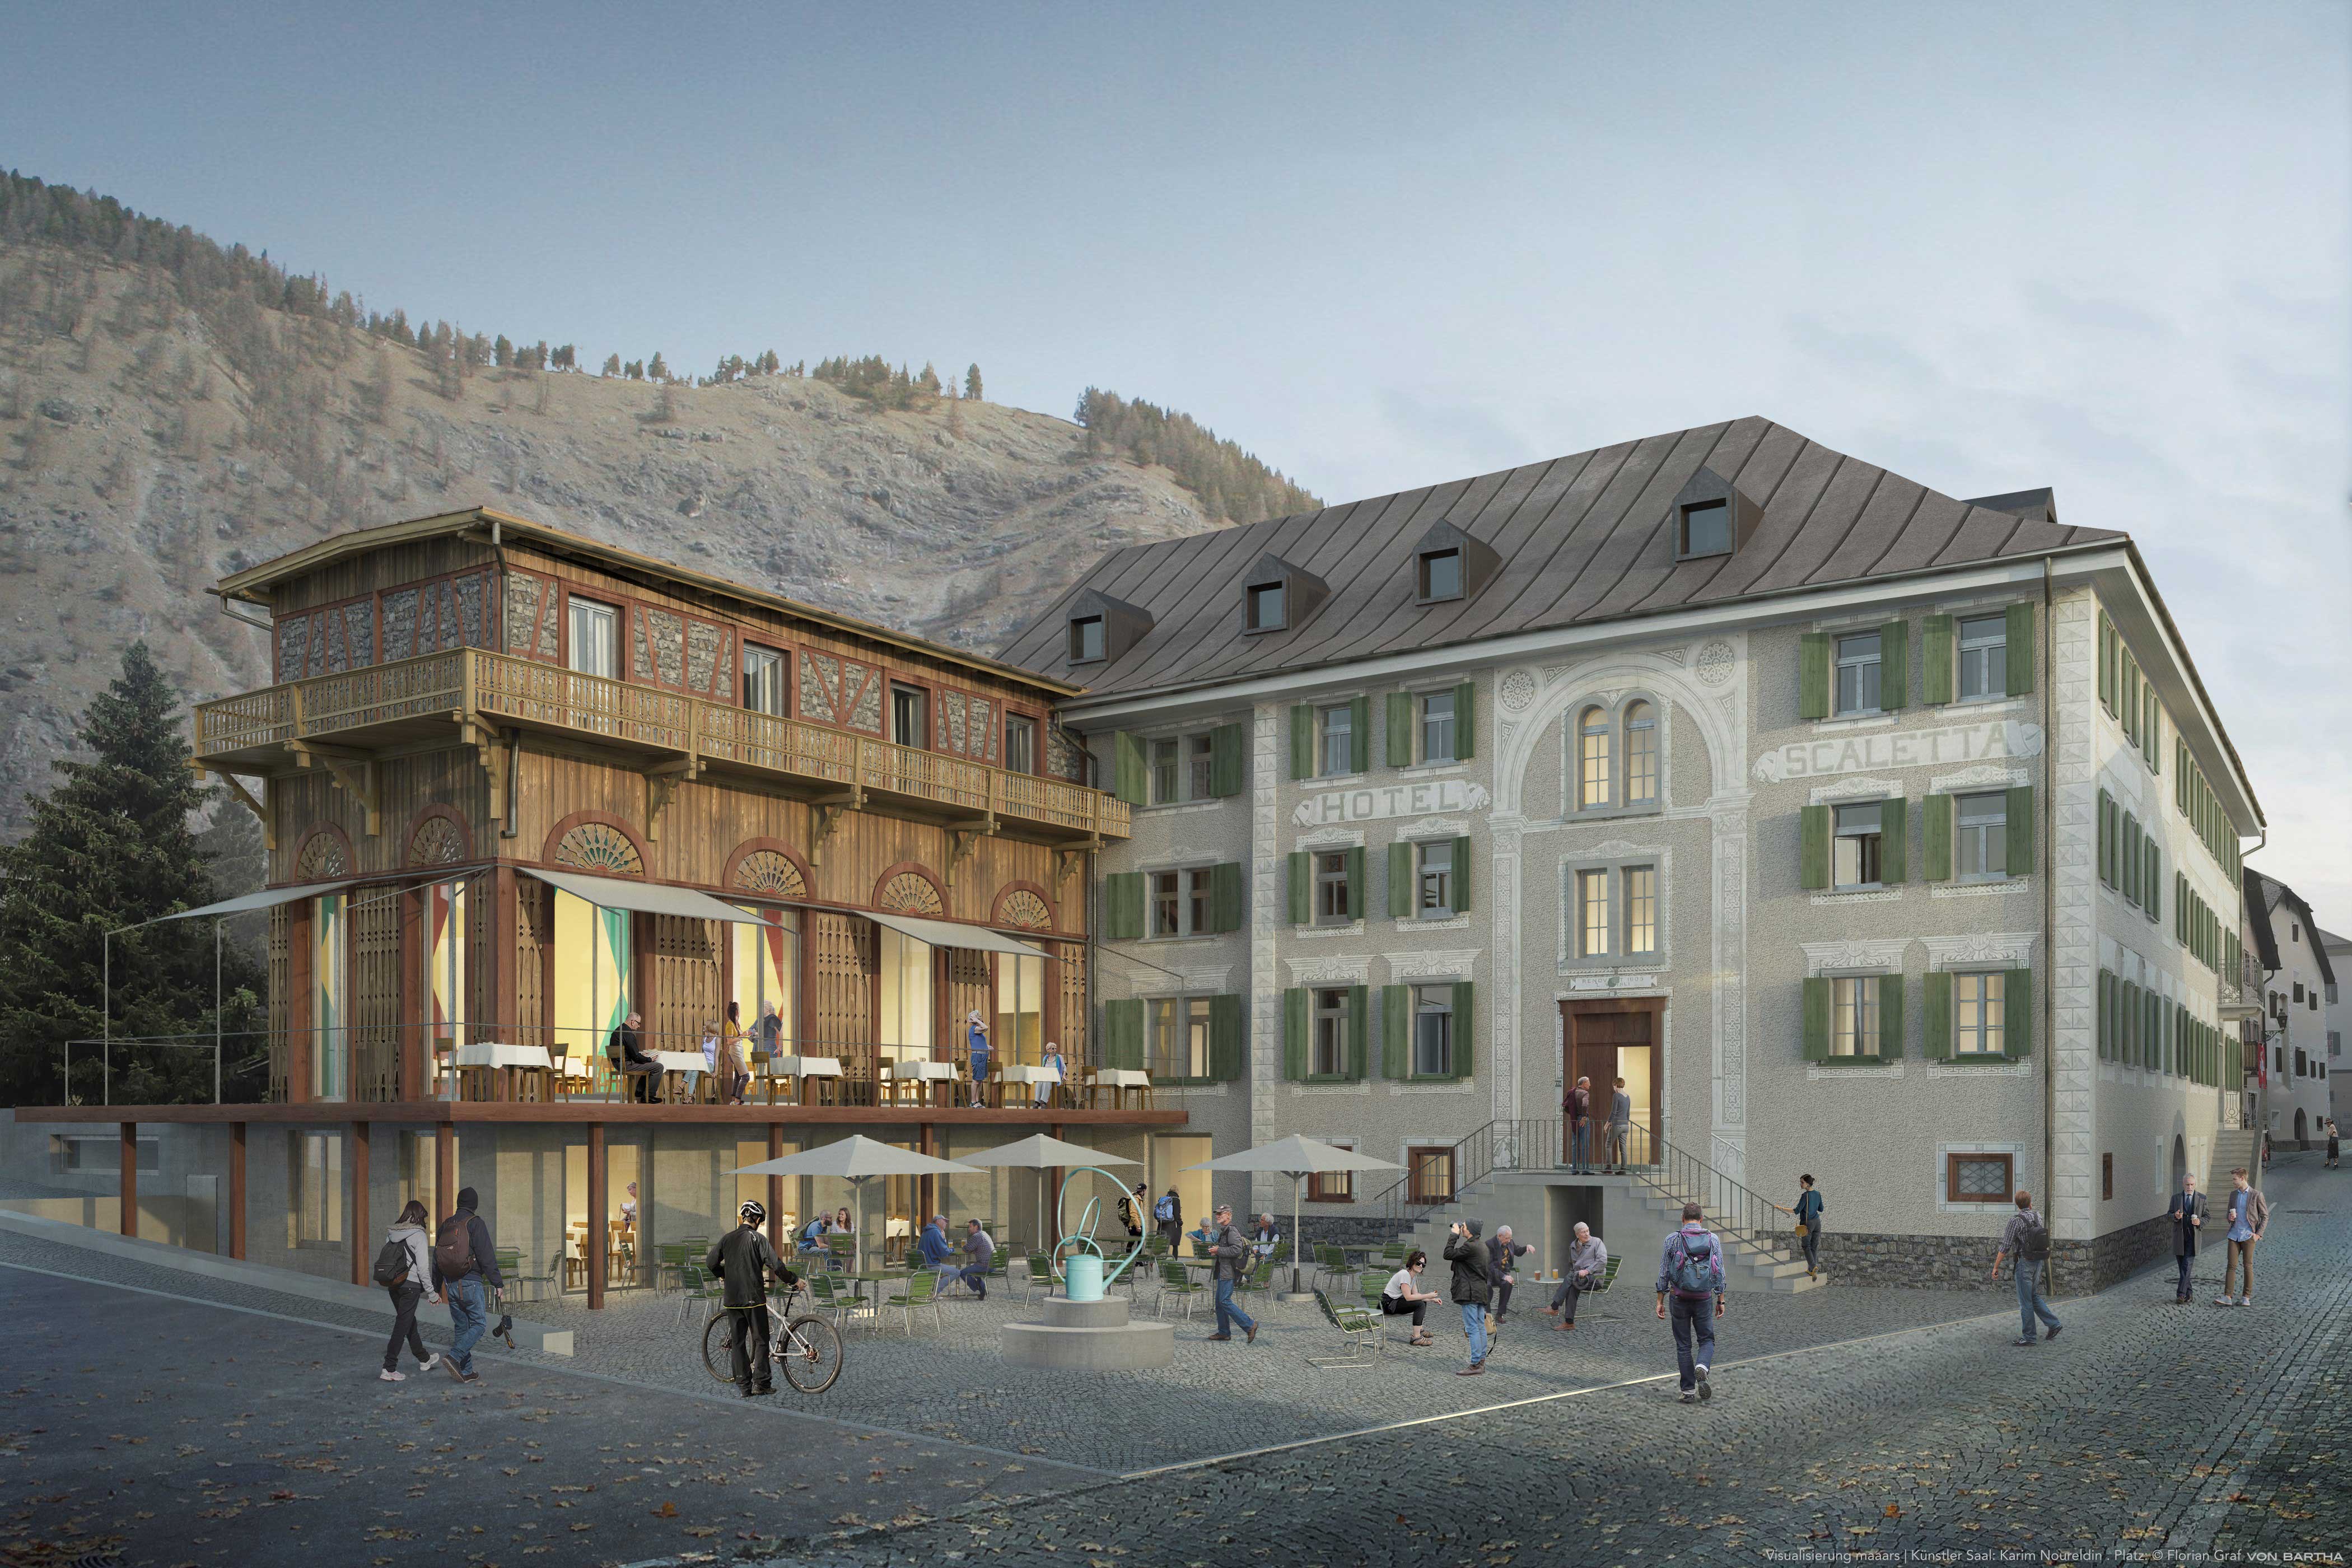 Projekt Umbau und Sanierung Hotel Scaletta in S-chanf